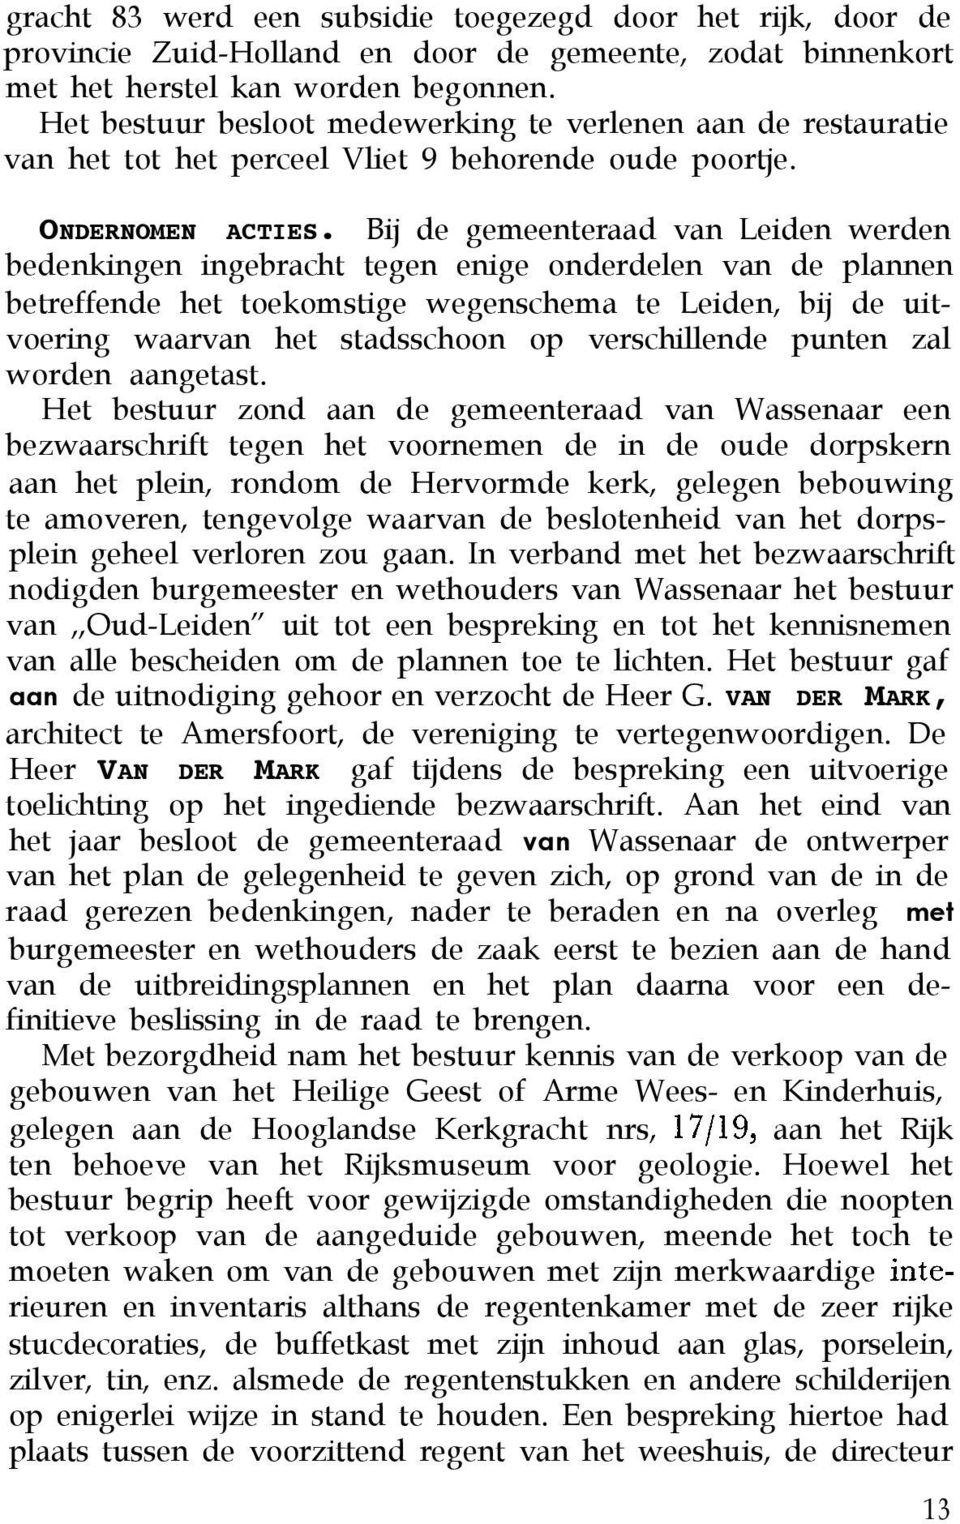 Bij de gemeenteraad van Leiden werden bedenkingen ingebracht tegen enige onderdelen van de plannen betreffende het toekomstige wegenschema te Leiden, bij de uitvoering waarvan het stadsschoon op